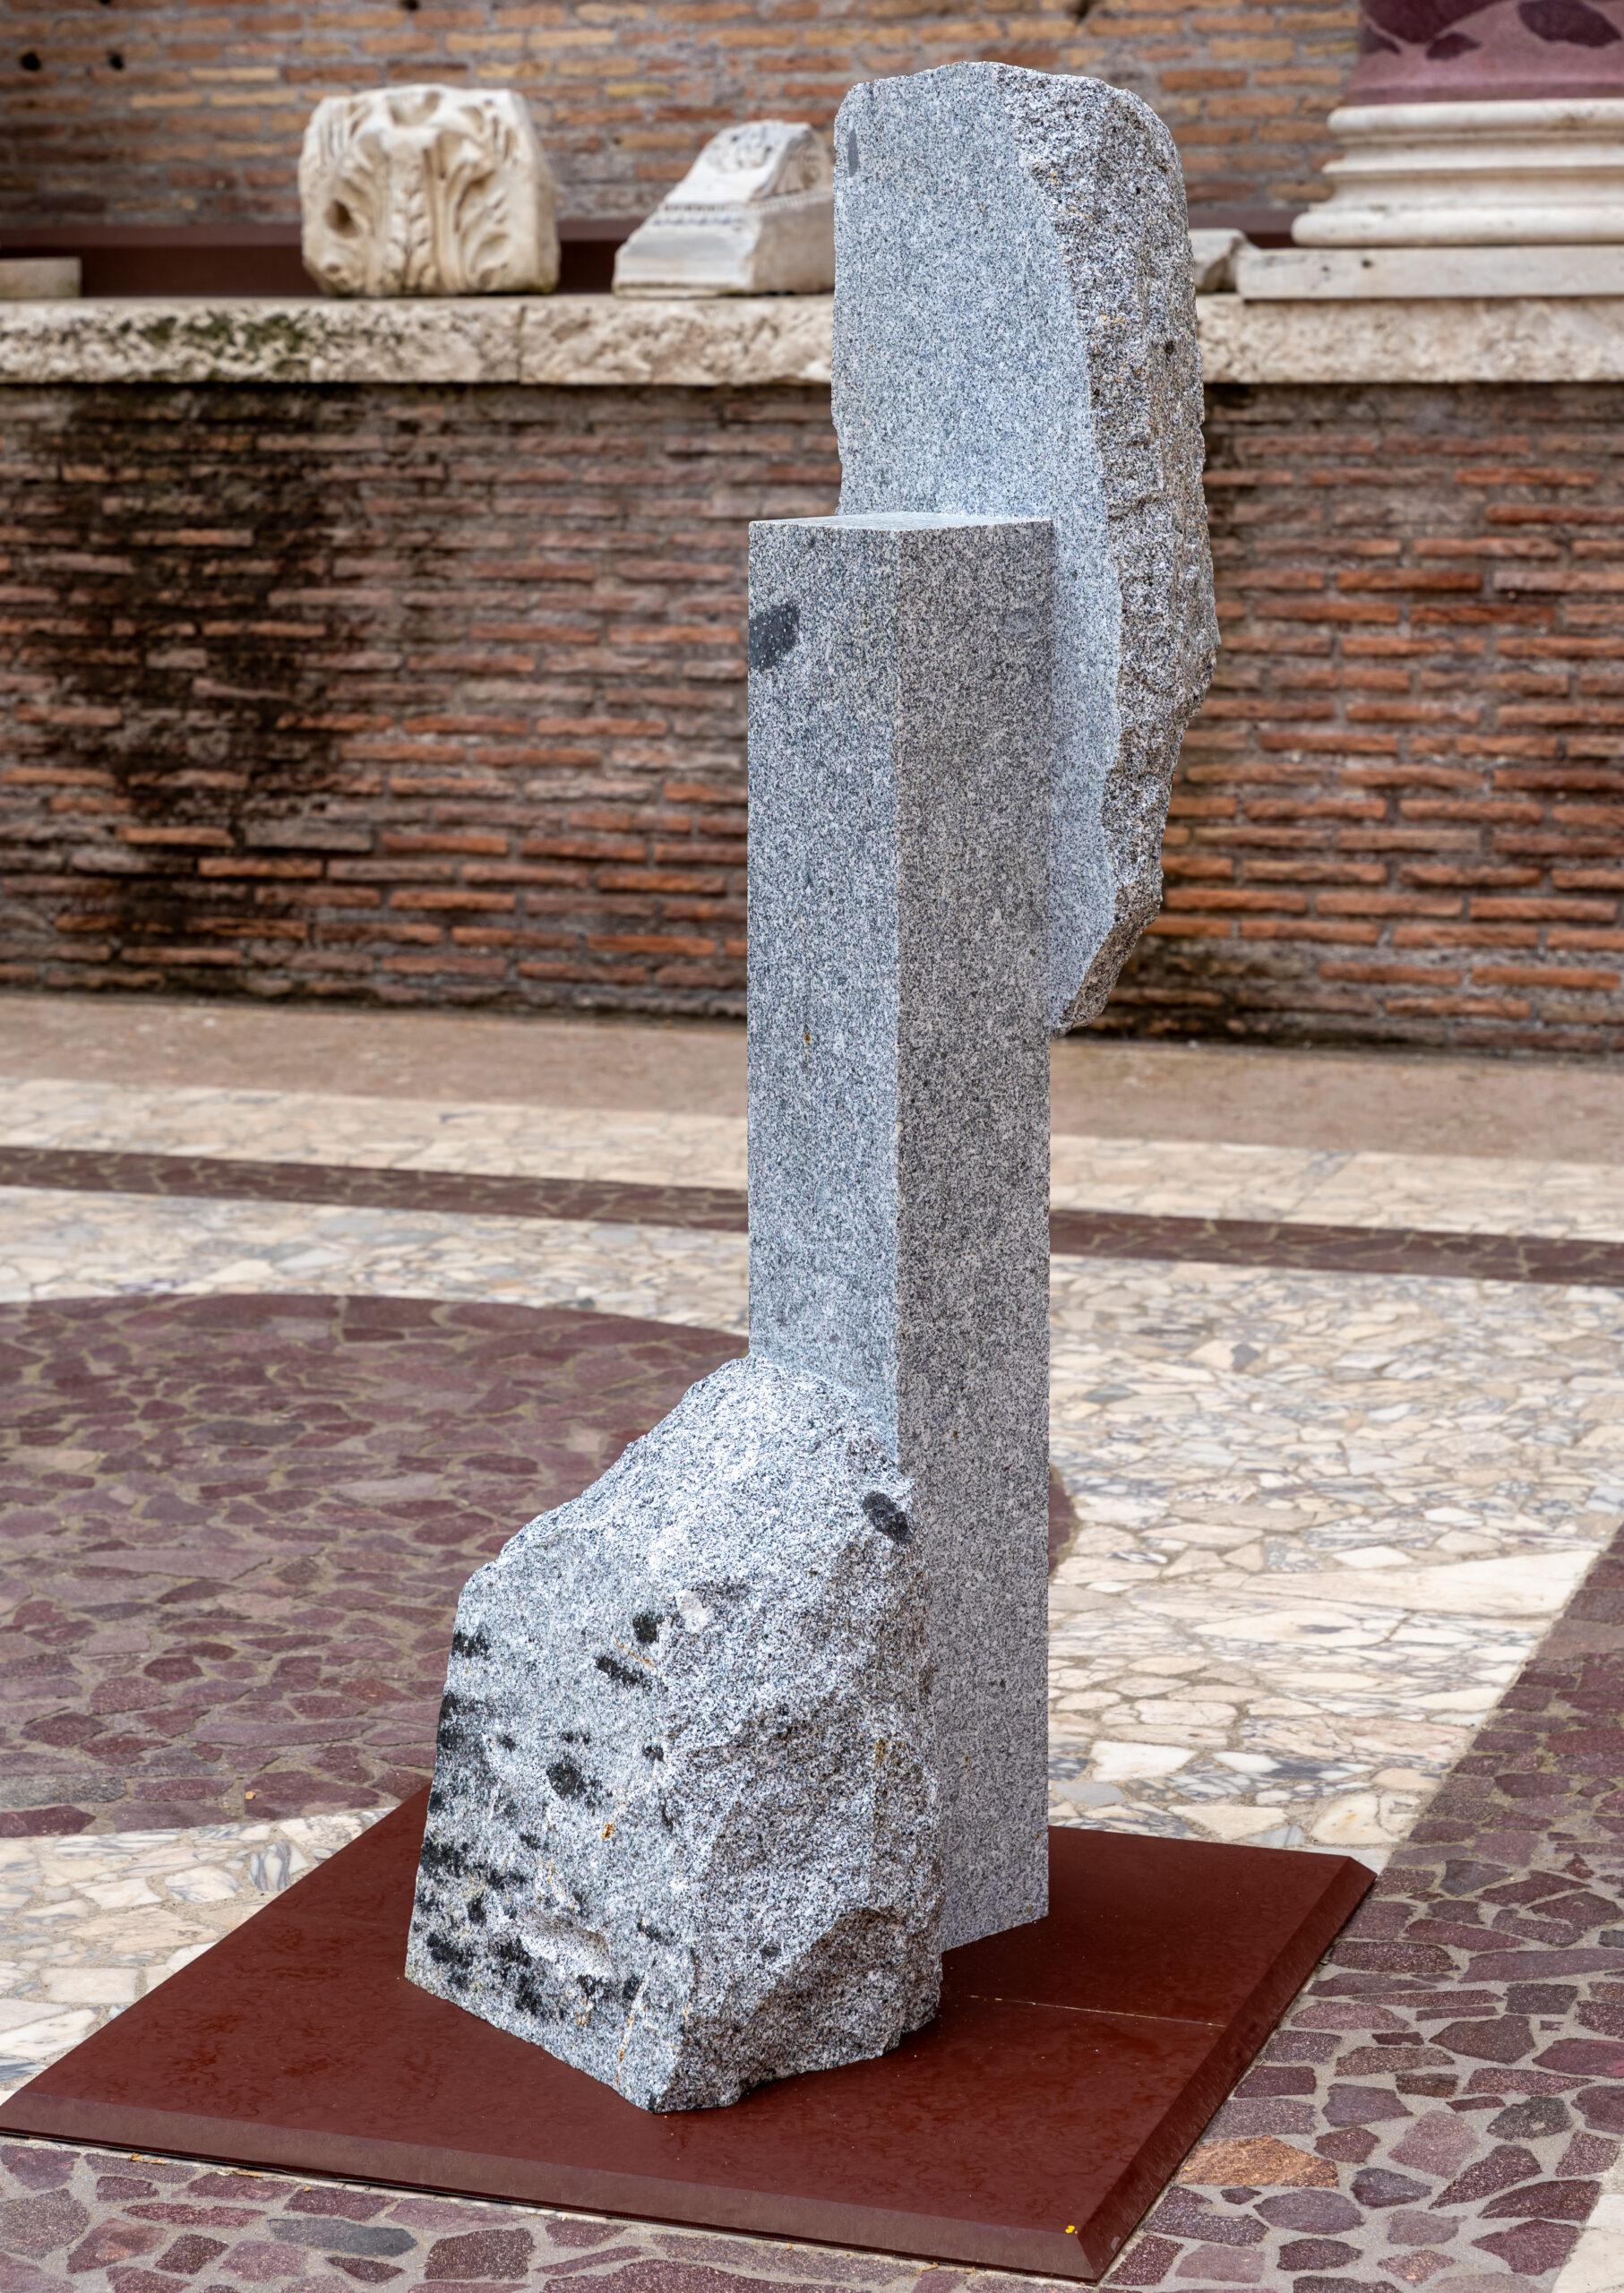 Le granit de Korè-Elba est une sculpture monumentale unique de l'artiste contemporain Mattia Bosco. Cette sculpture est réalisée en granit de l'île d'Elbe. Ses dimensions sont de 176,5 × 48 × 88,5 cm (69,5 × 18,9 × 34,8 in). 

Cette pièce fait